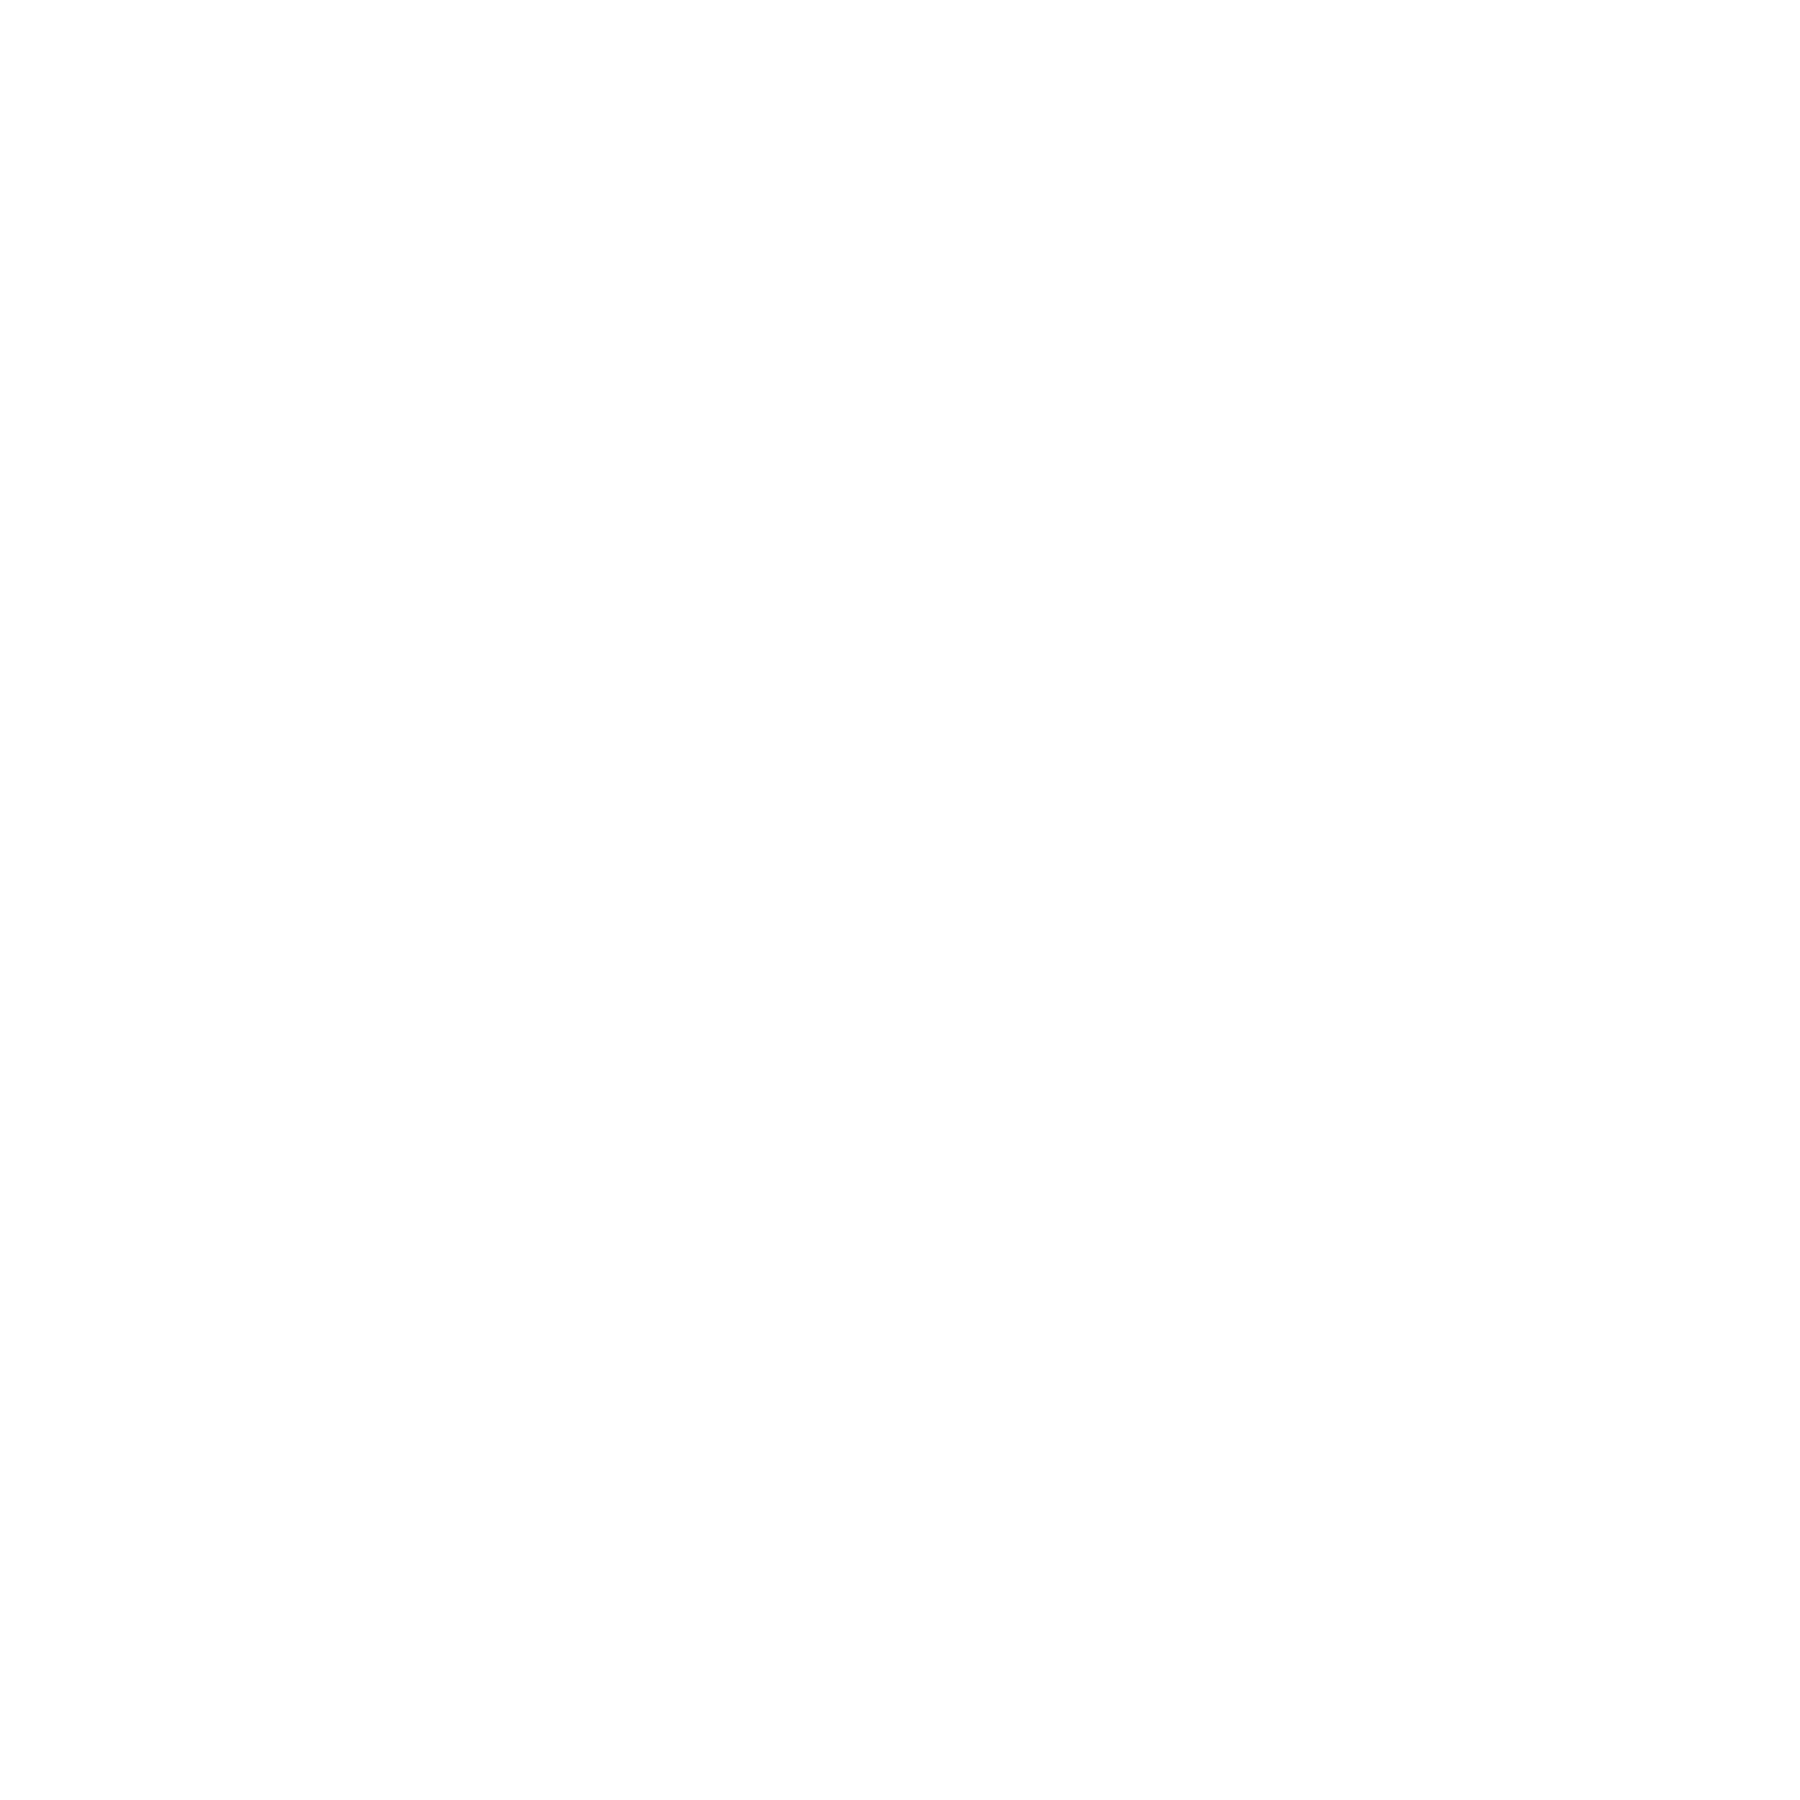 『RUSH INTO SUMMER! 2018』7.23mon グランフロント大阪北館4階 ナレッジシアター